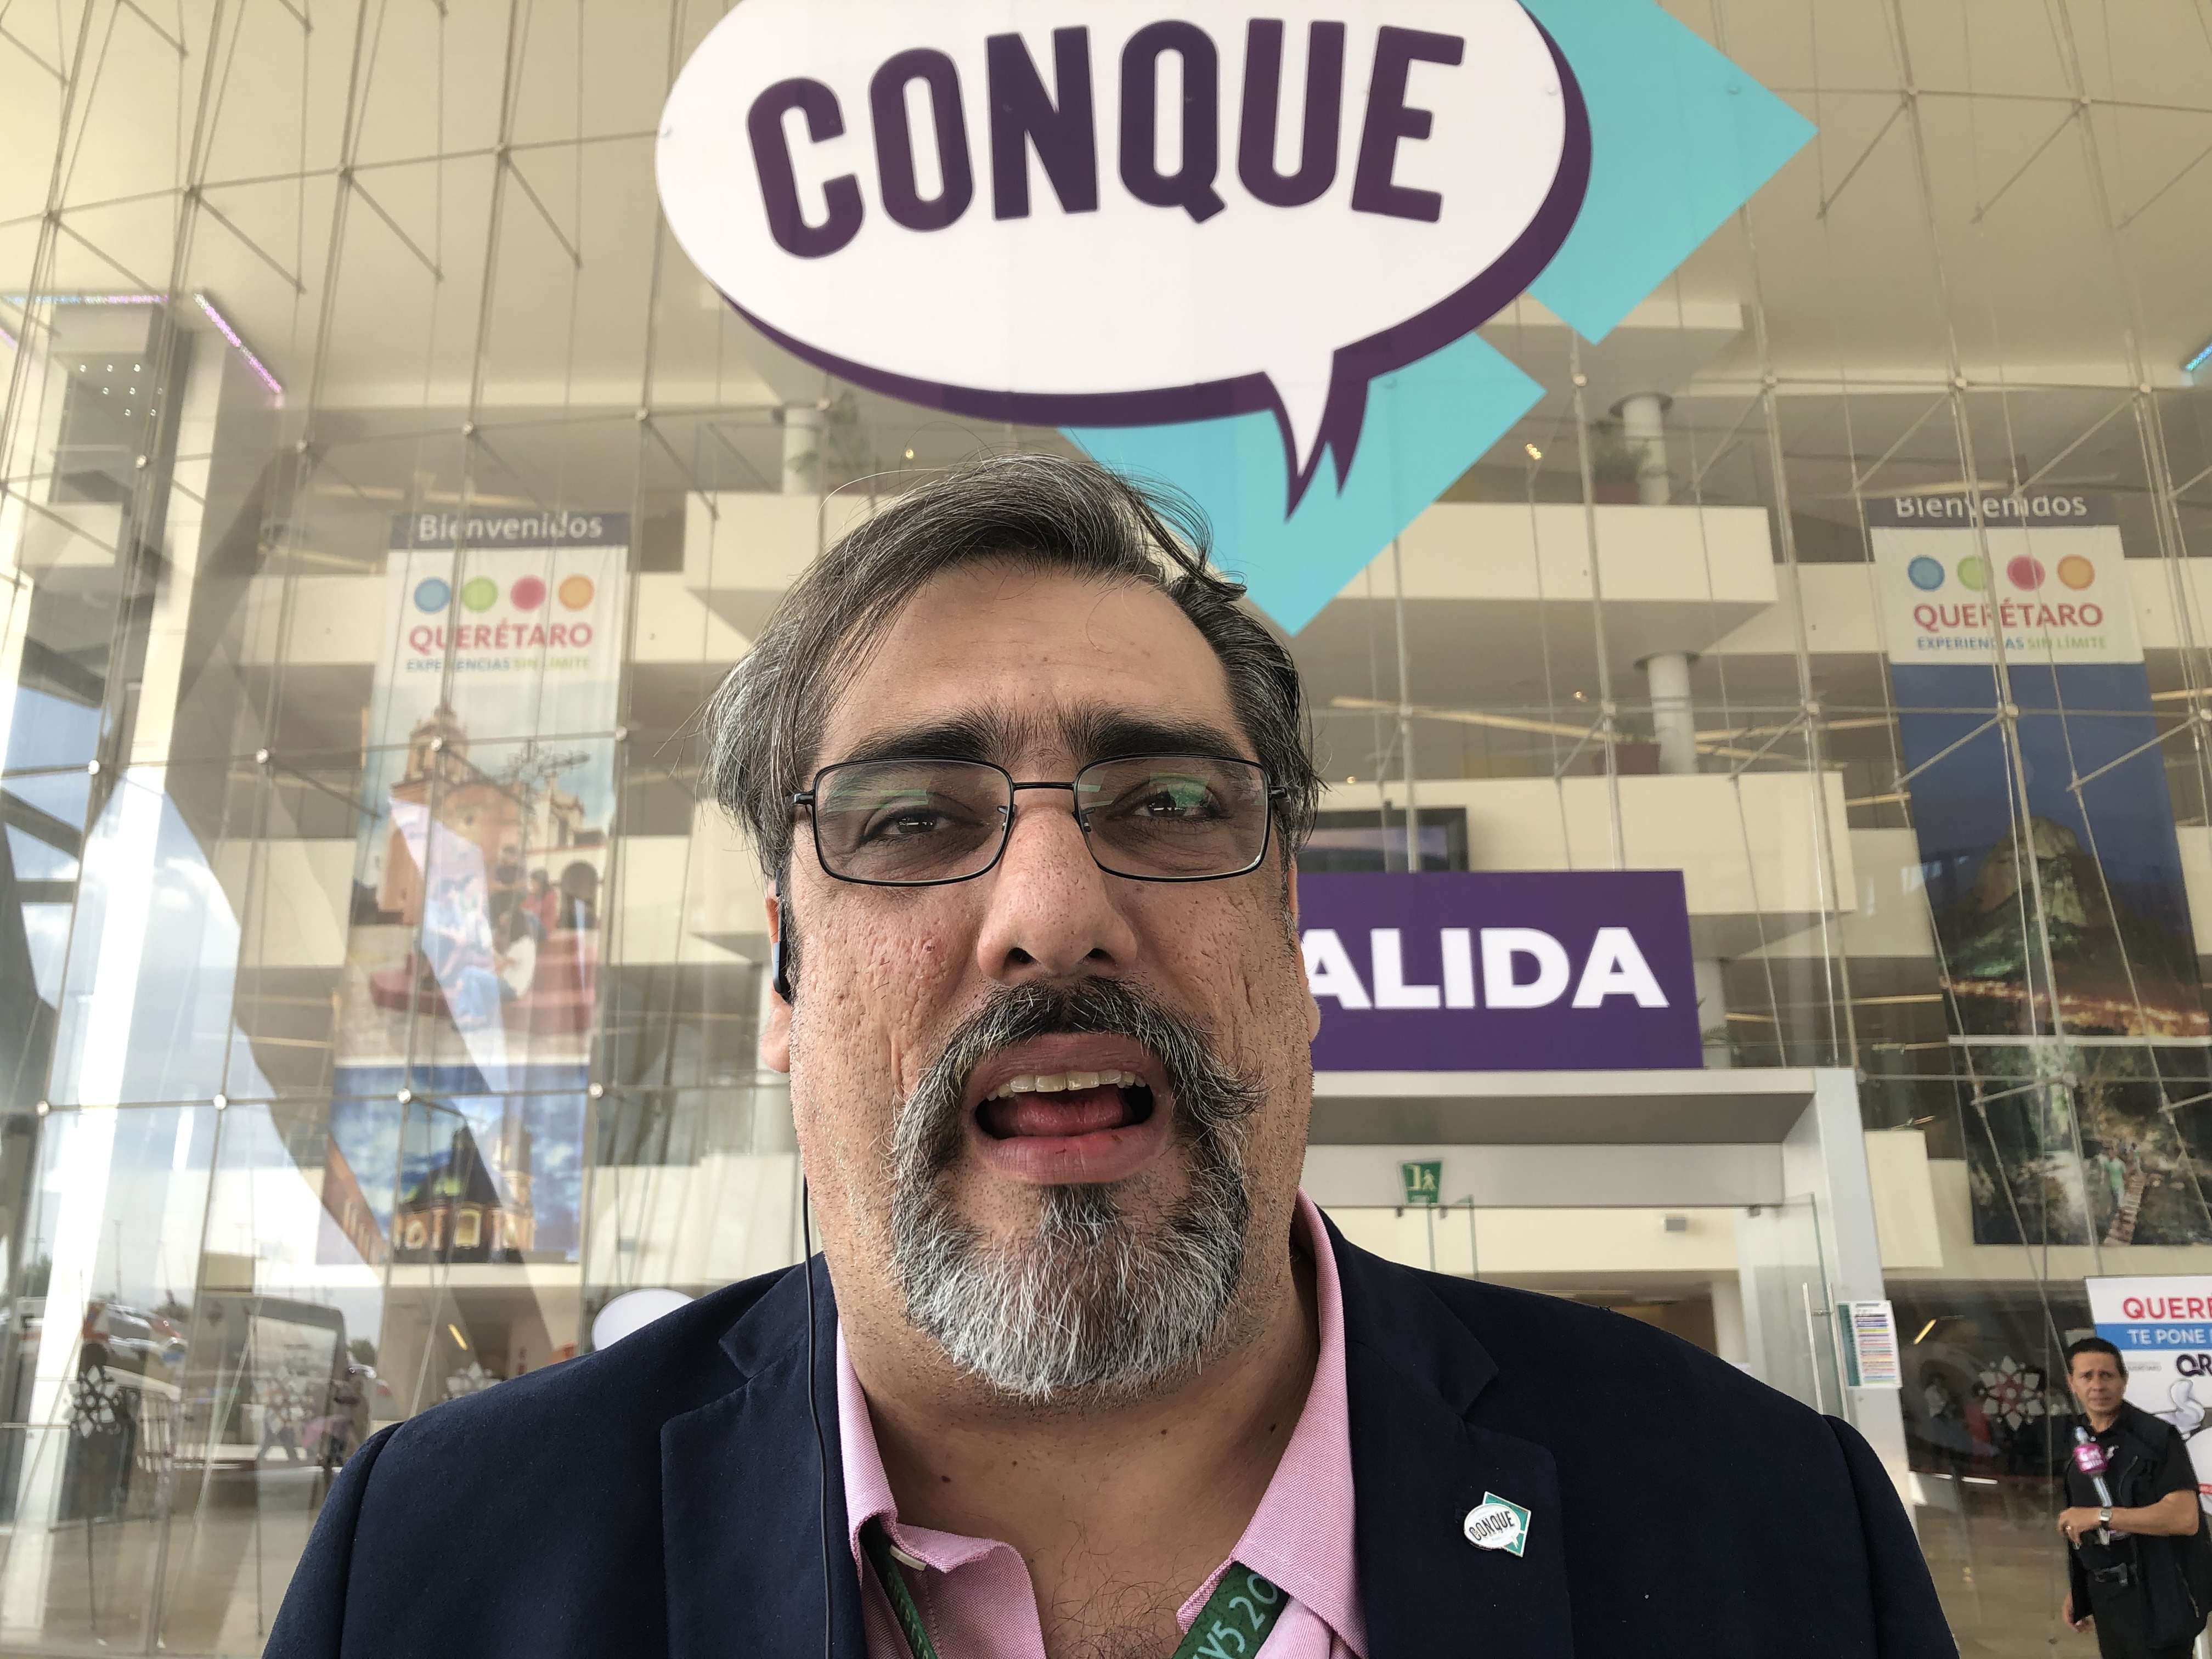  CONQUE 2019 supera expectativas y quiere repetir en Querétaro para 2020